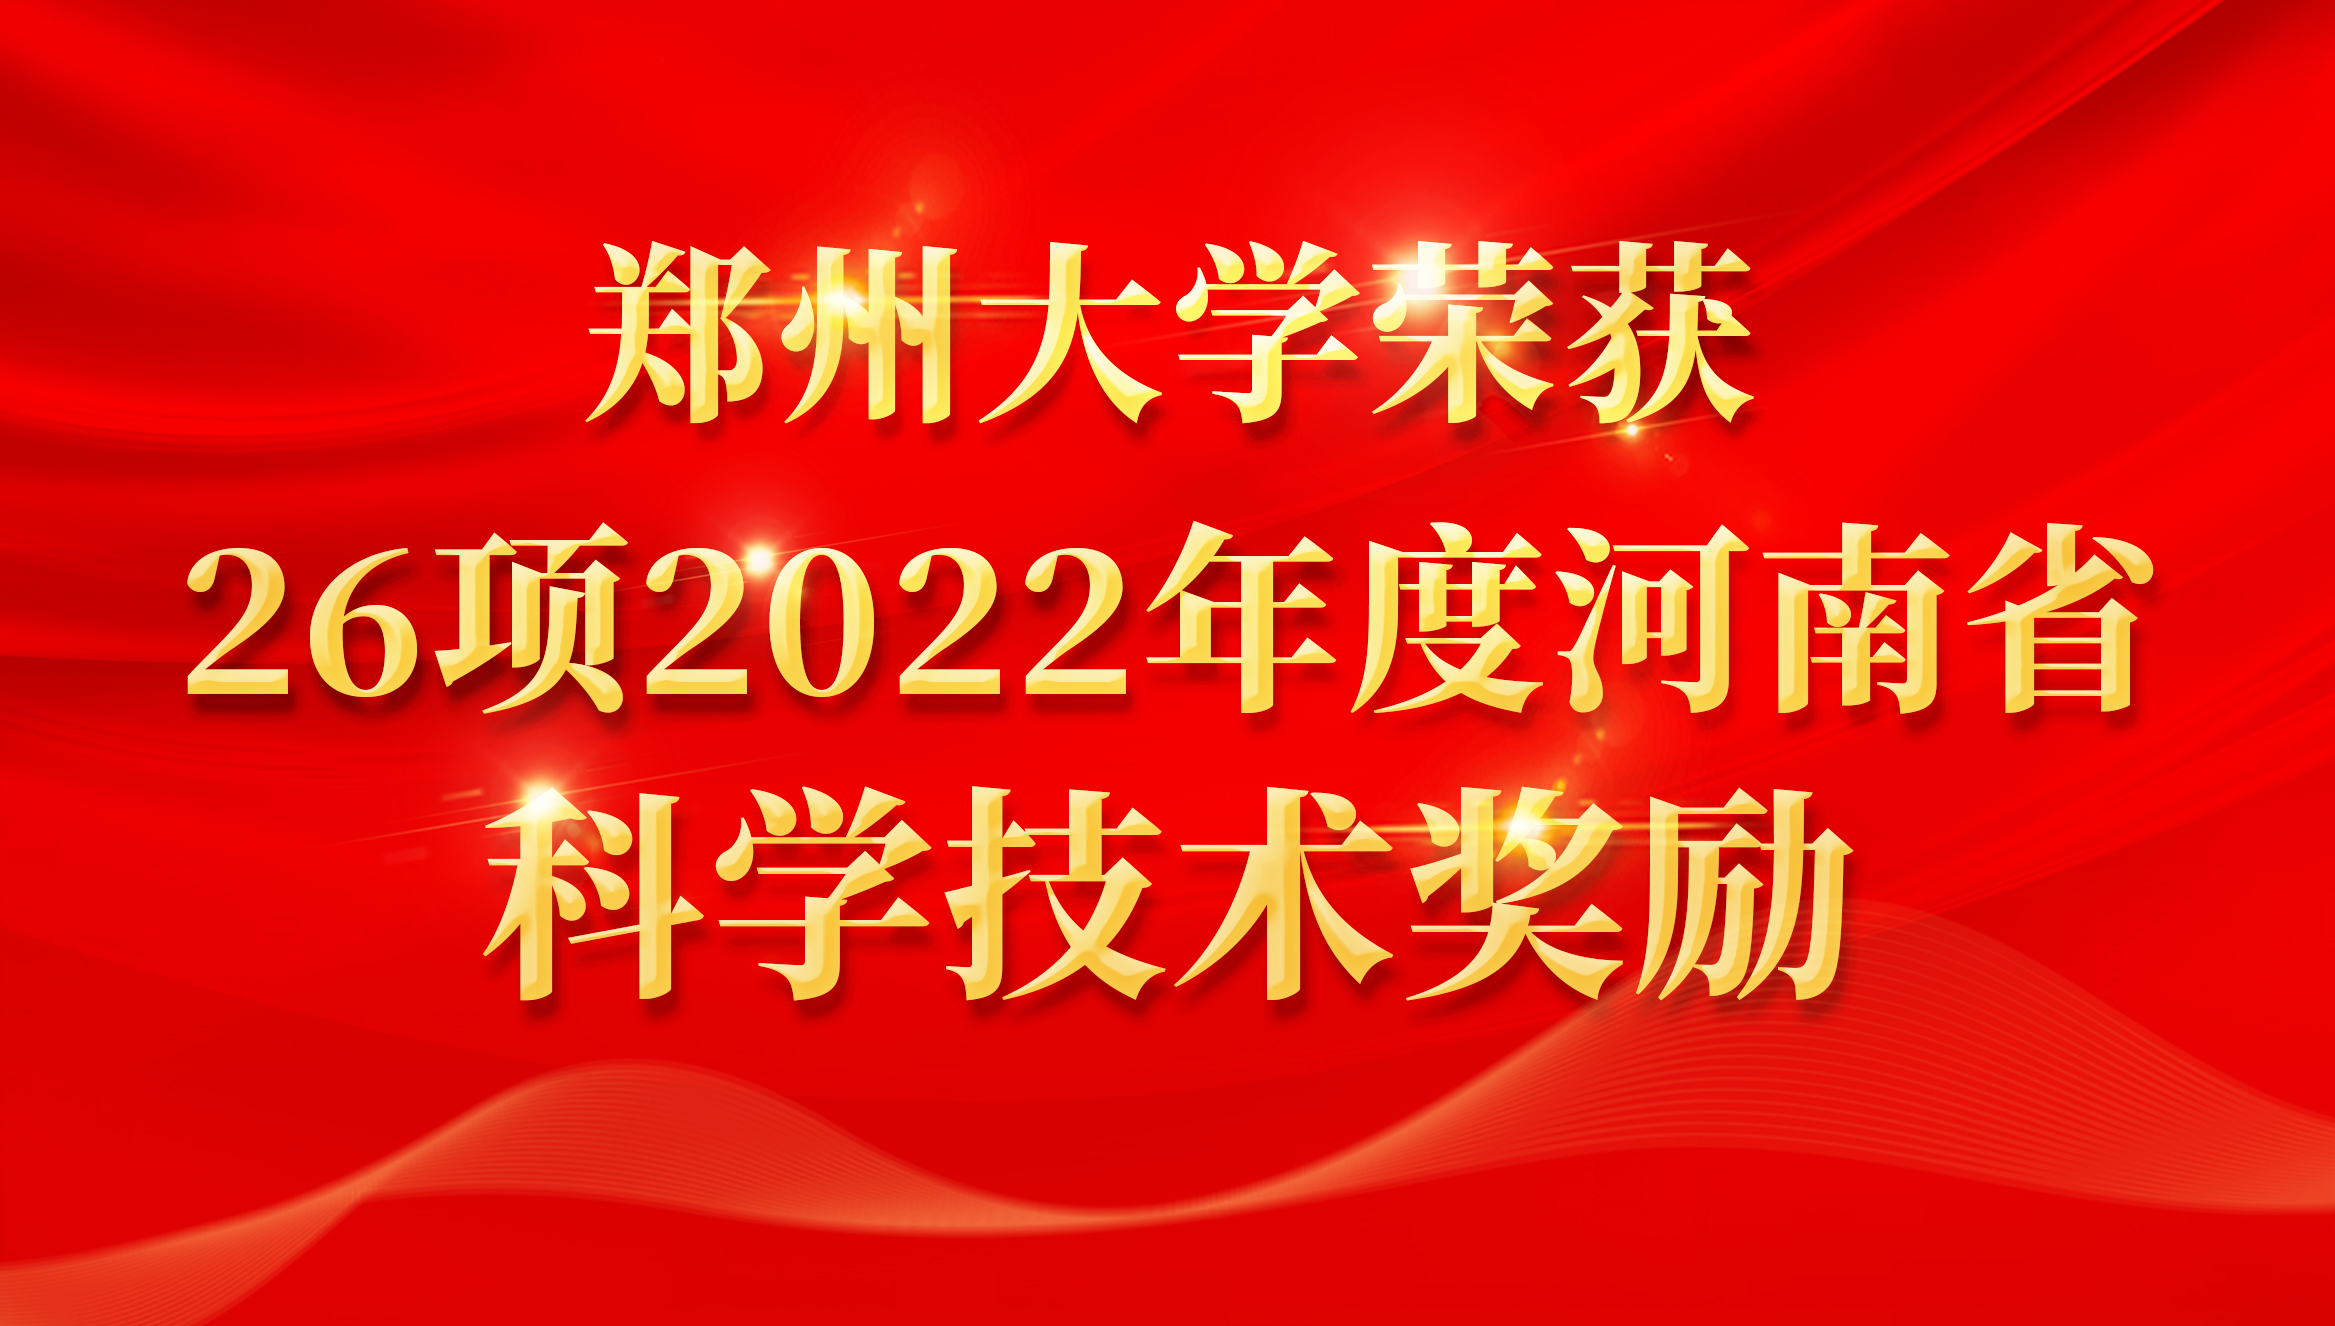 郑州大学荣获26项2022年度河南省科学技术奖励